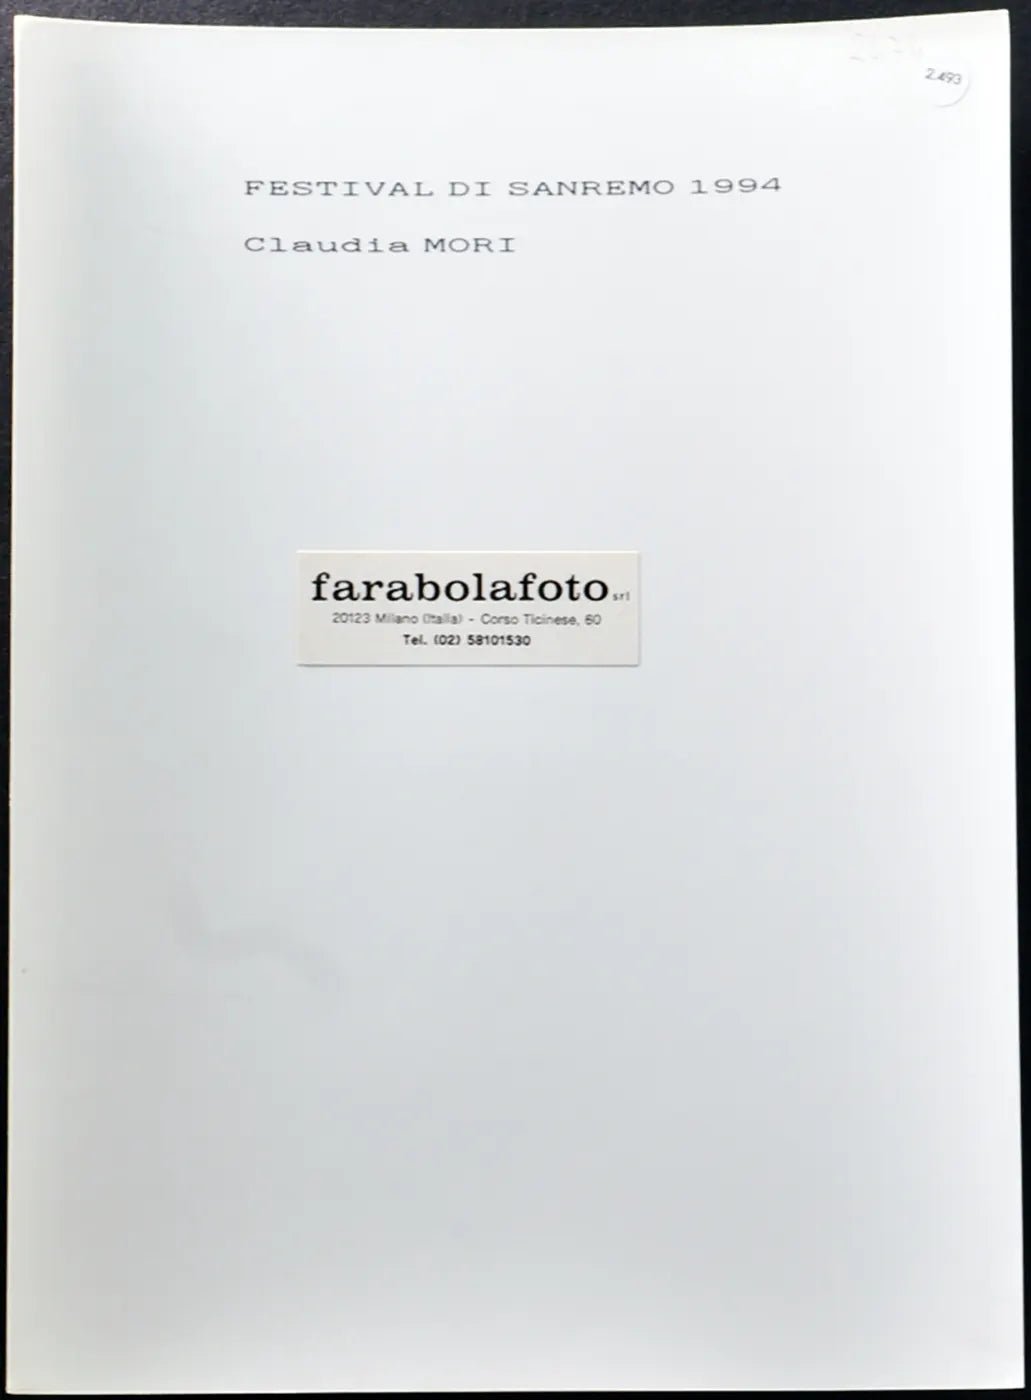 Claudia Mori Festival di Sanremo 1994 Ft 2493 - Stampa 24x18 cm - Farabola Stampa ai sali d'argento